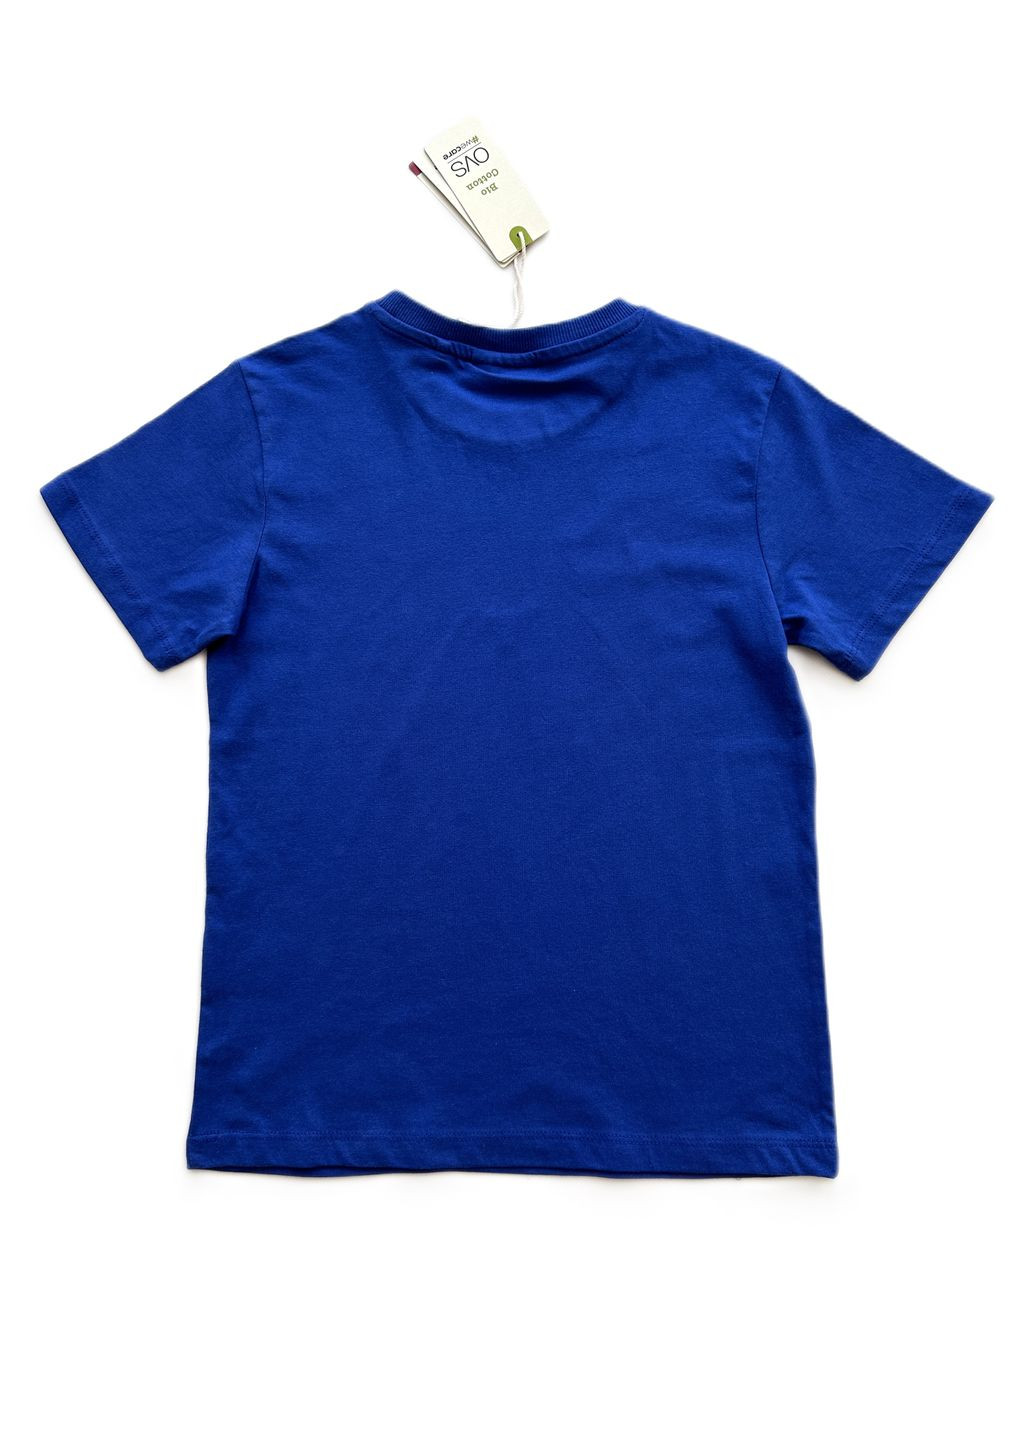 Синяя летняя футболка для парня синяя однотонная 2000-41 (134 см) OVS